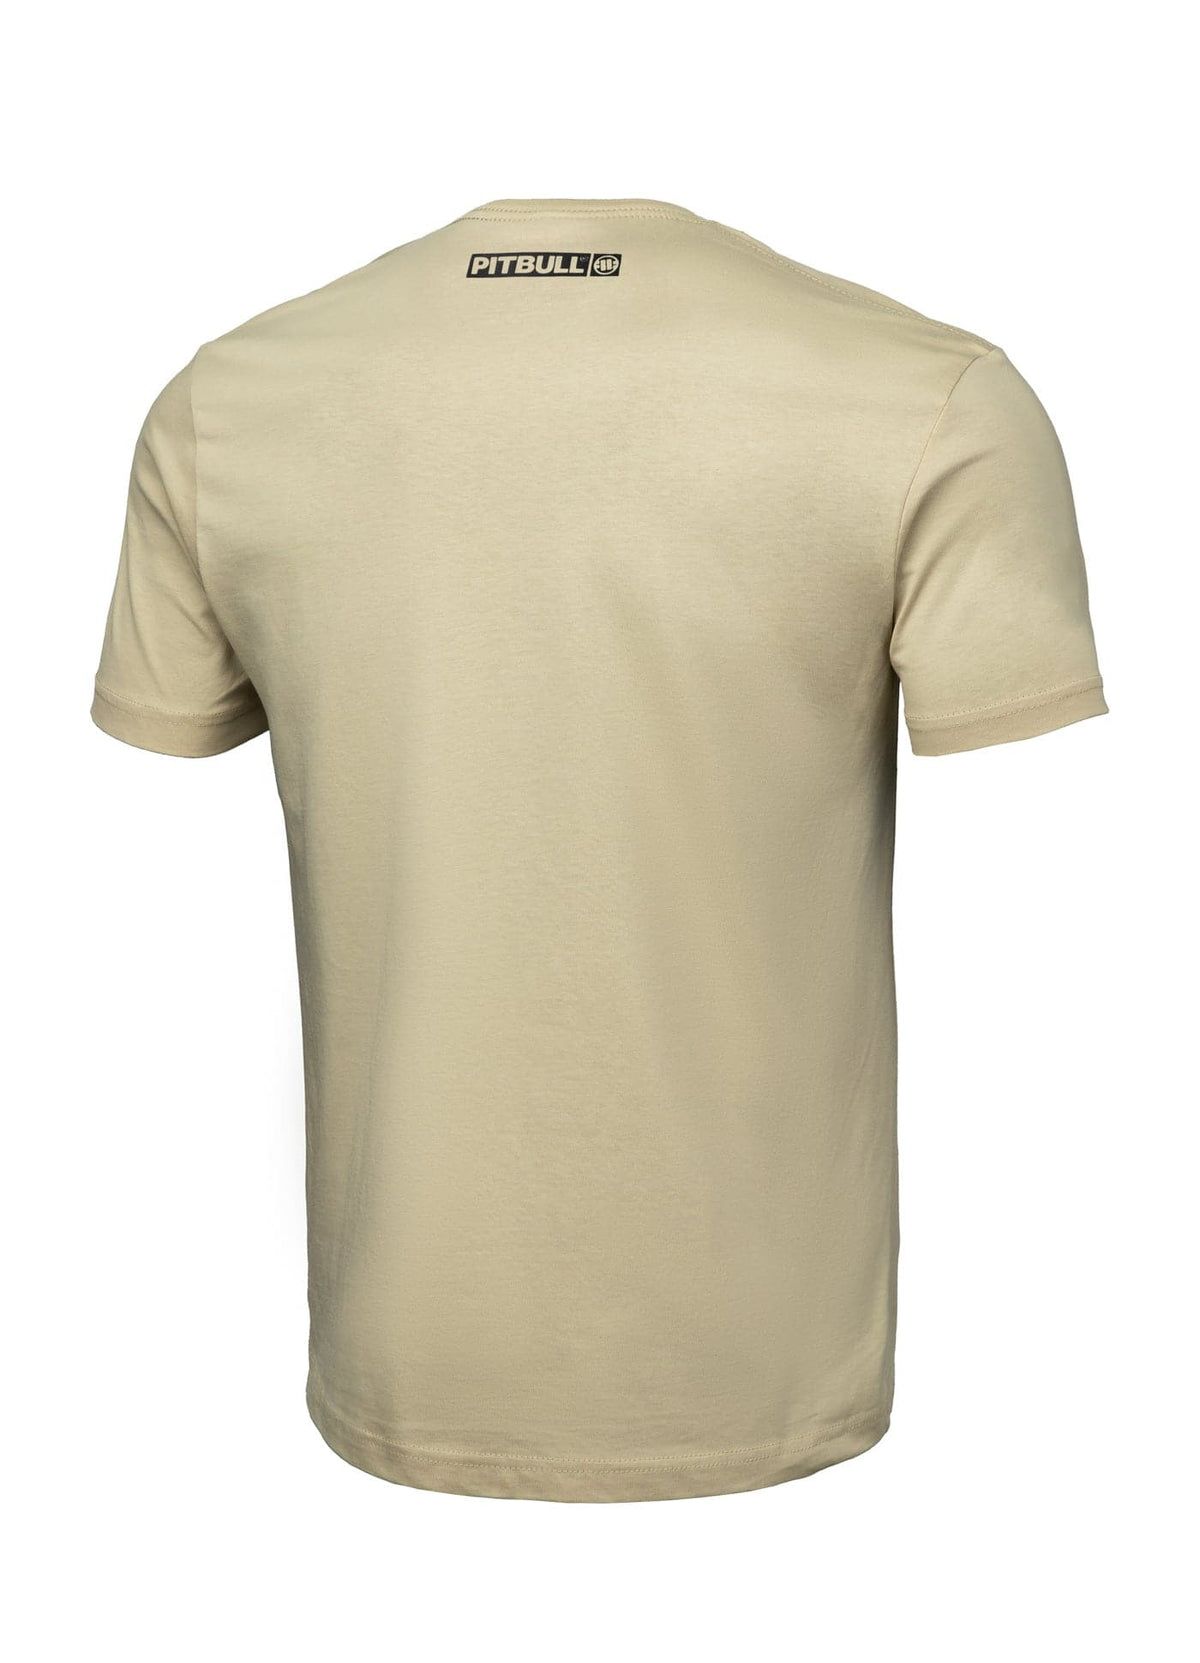 HILLTOP Lightweight Sand T-shirt